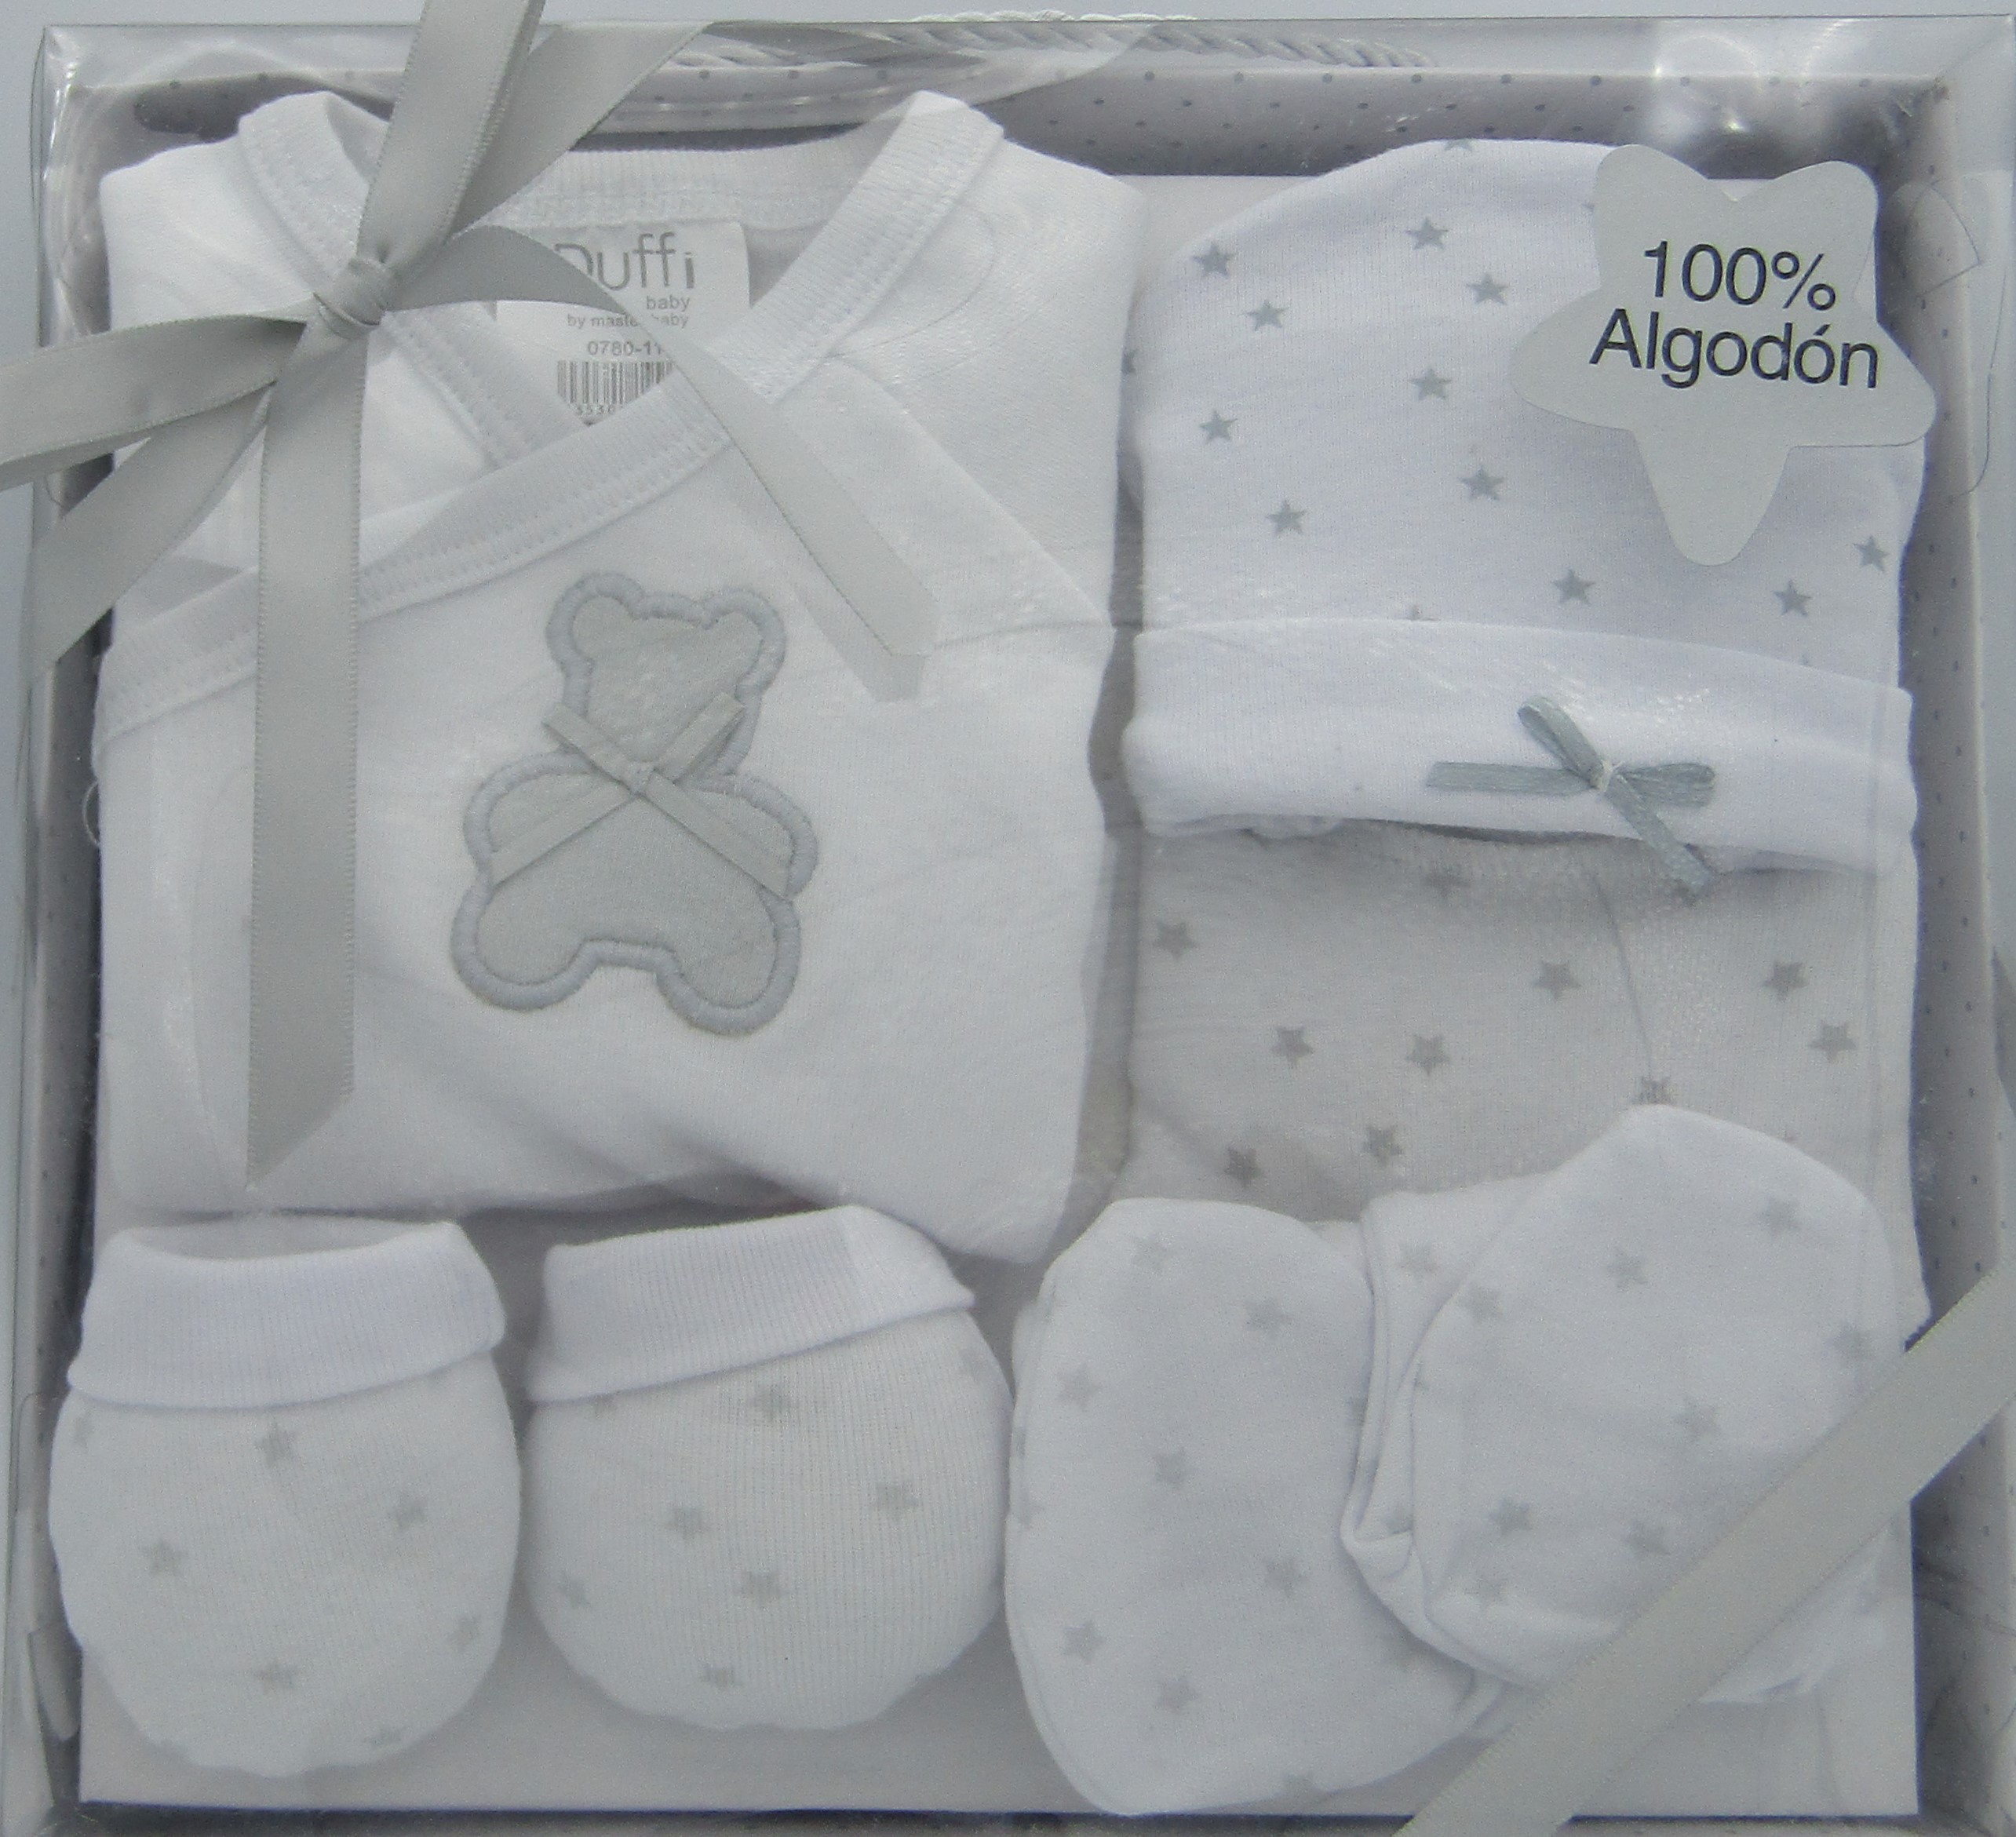 Interbaby - Set de regalo primera puesta para bebé en beige